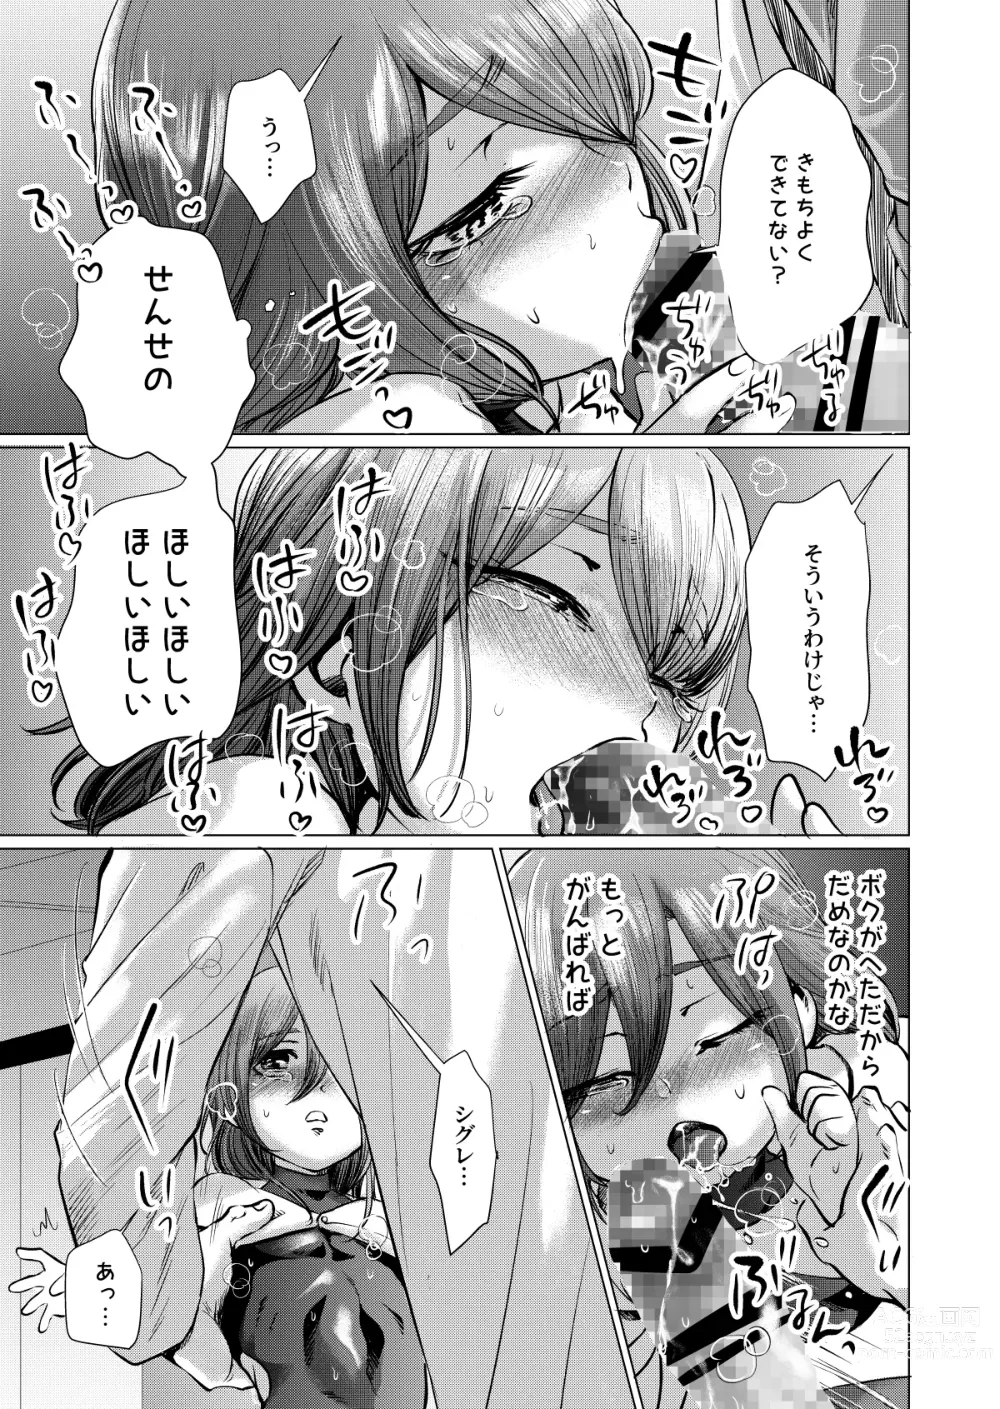 Page 12 of doujinshi Musume Modoki - Daughter similar to daughter 3